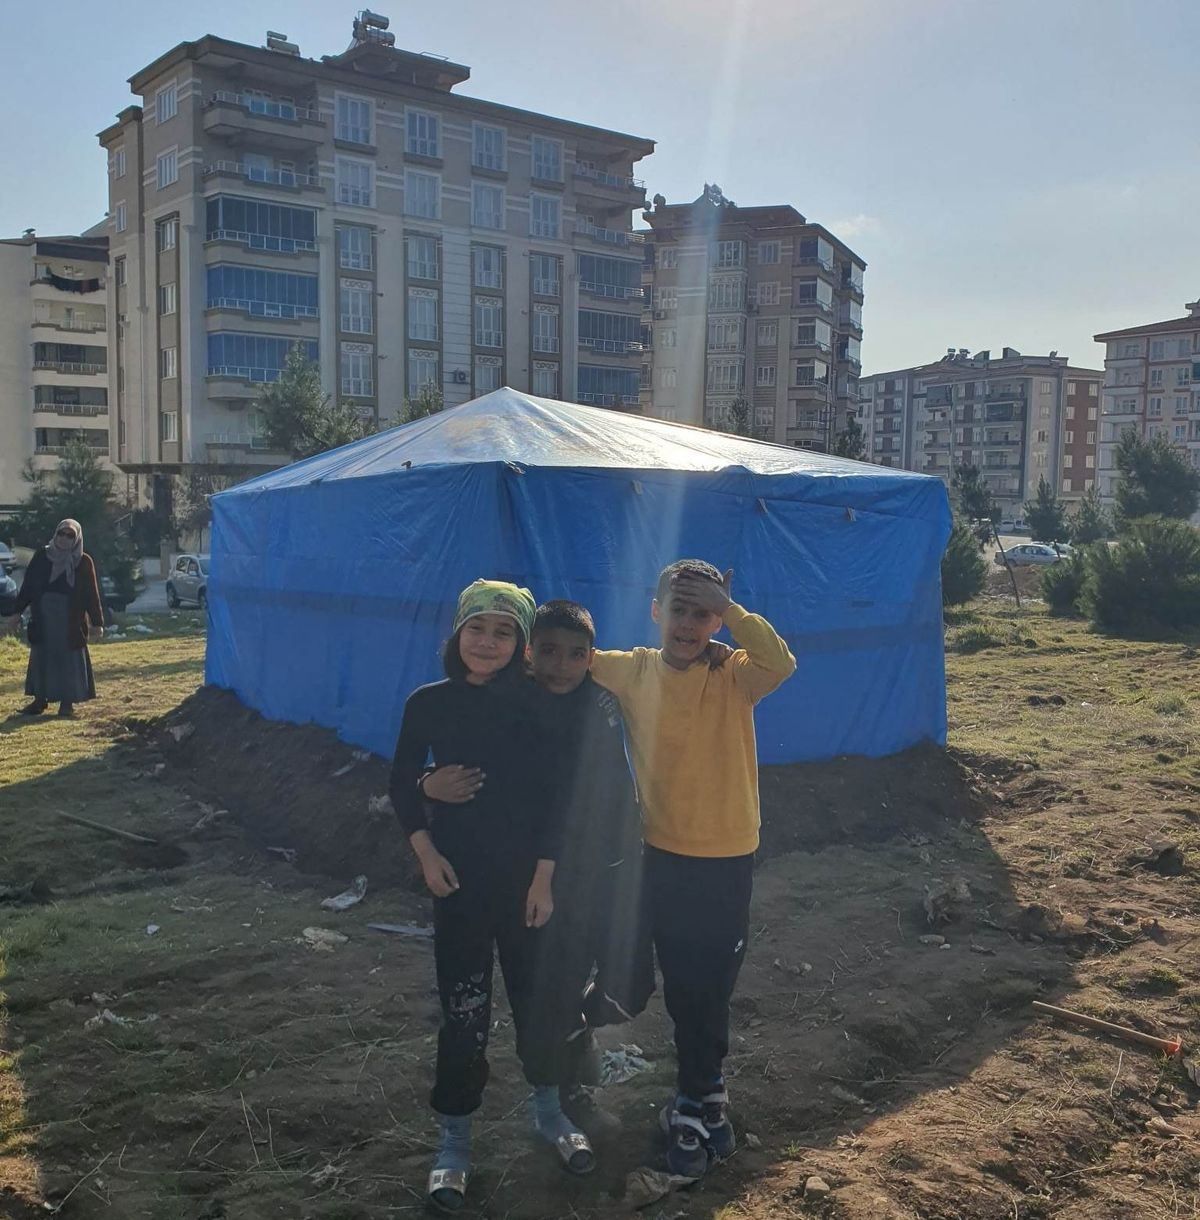 A sok földrengés ellenére sem akarnak elköltözni, de felhúztak egy sátrat a házzal szemben, hogy baj esetén tudjanak hova menni